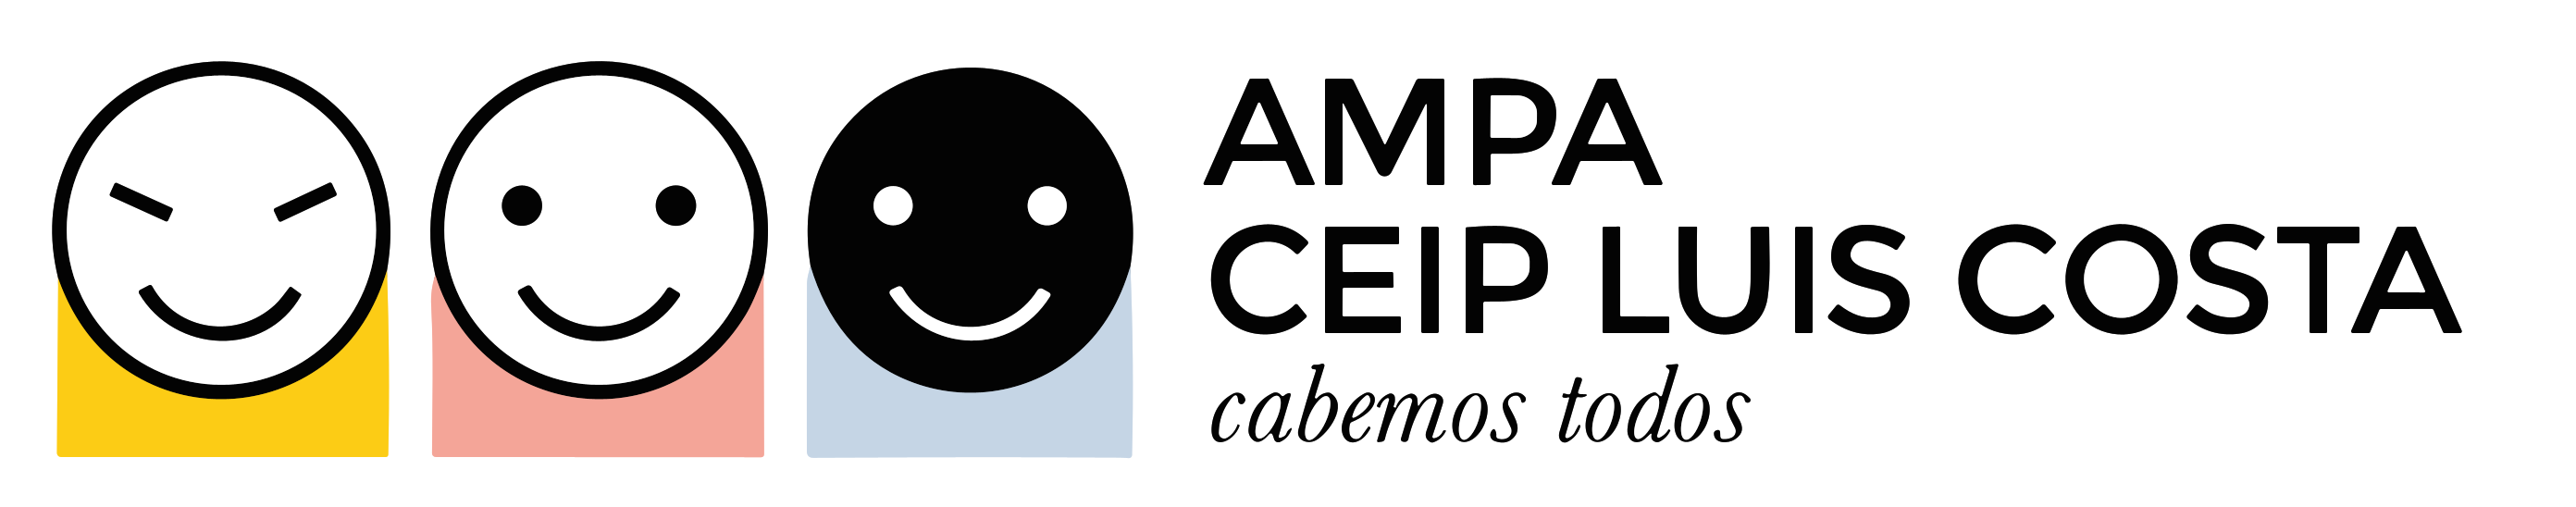 AMPA-CEIP-LUIS-COSTA